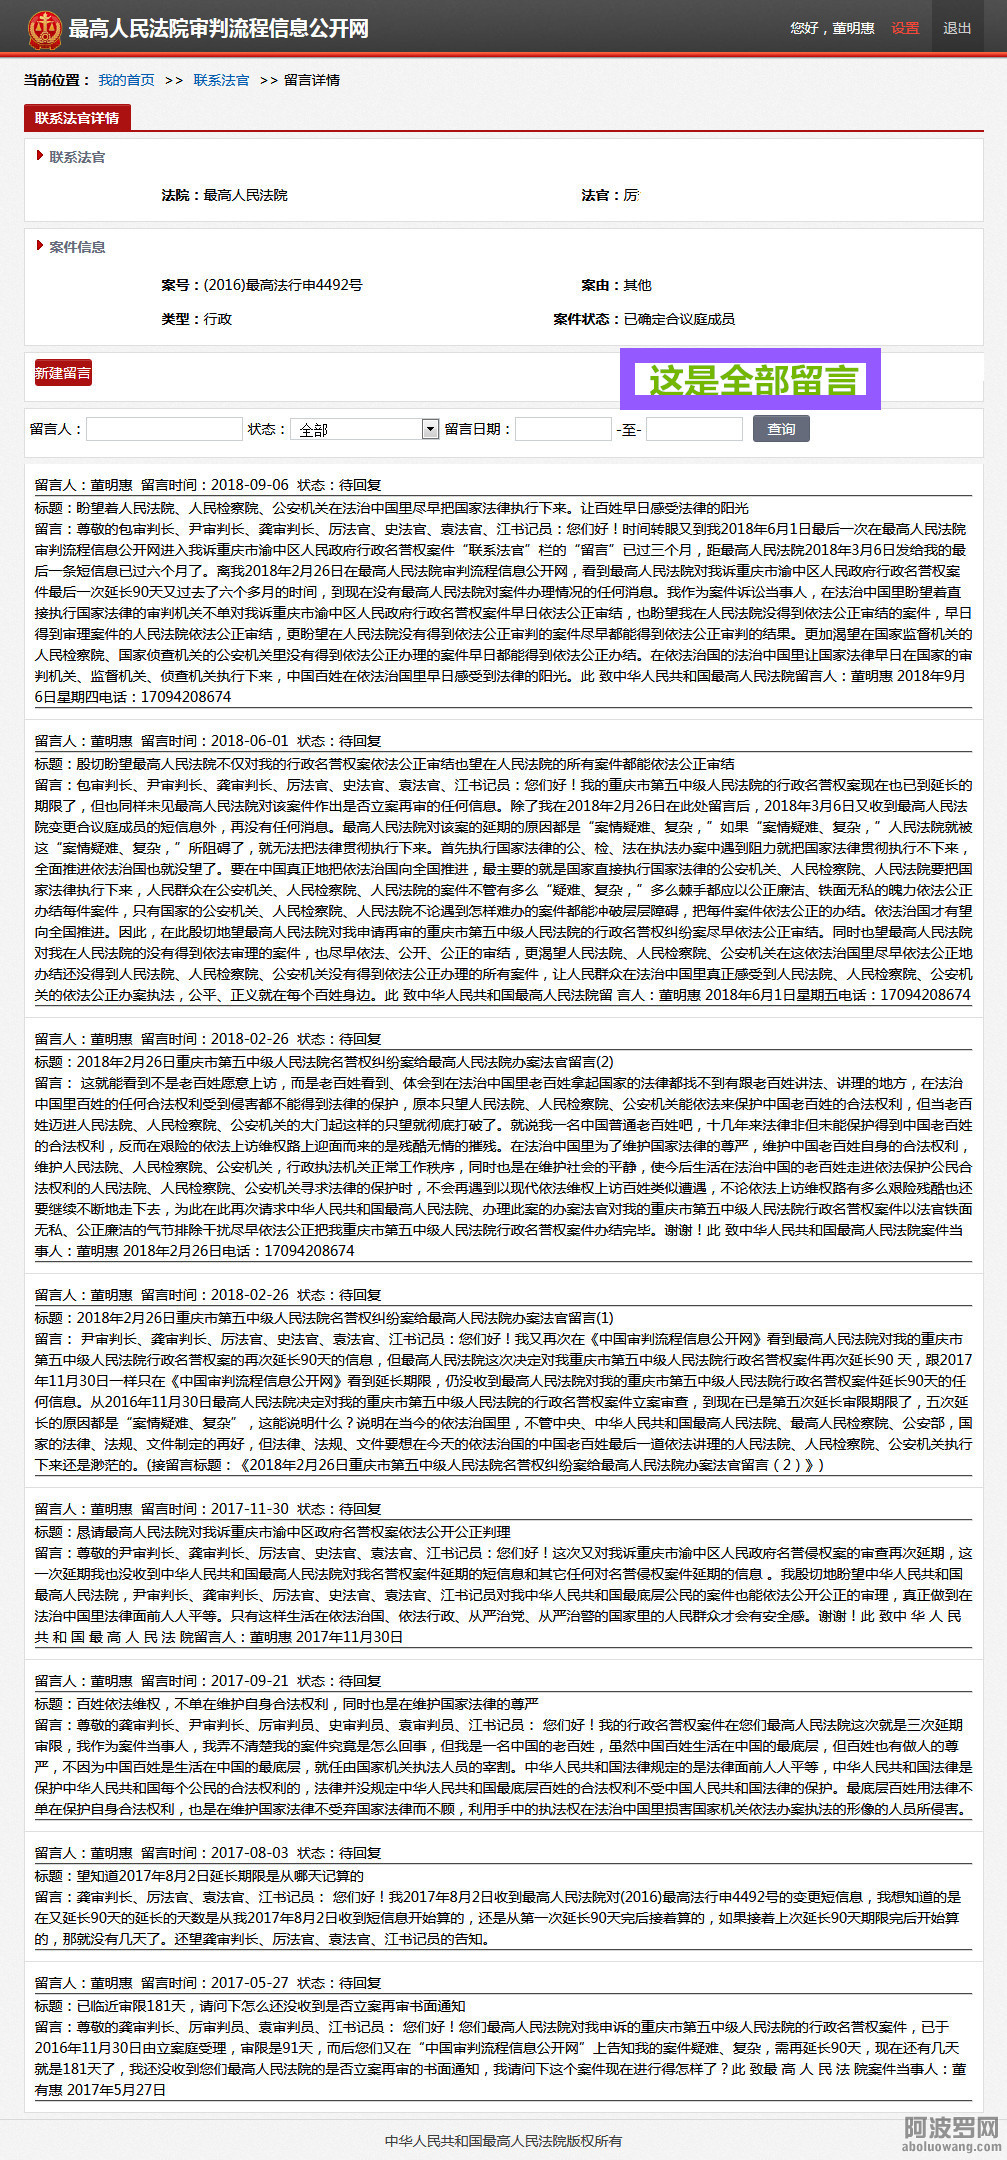 2018年9月6日我诉重庆市渝中区人民政府行政名誉权案再次在最高法院网留言后-我的首页-.jpg